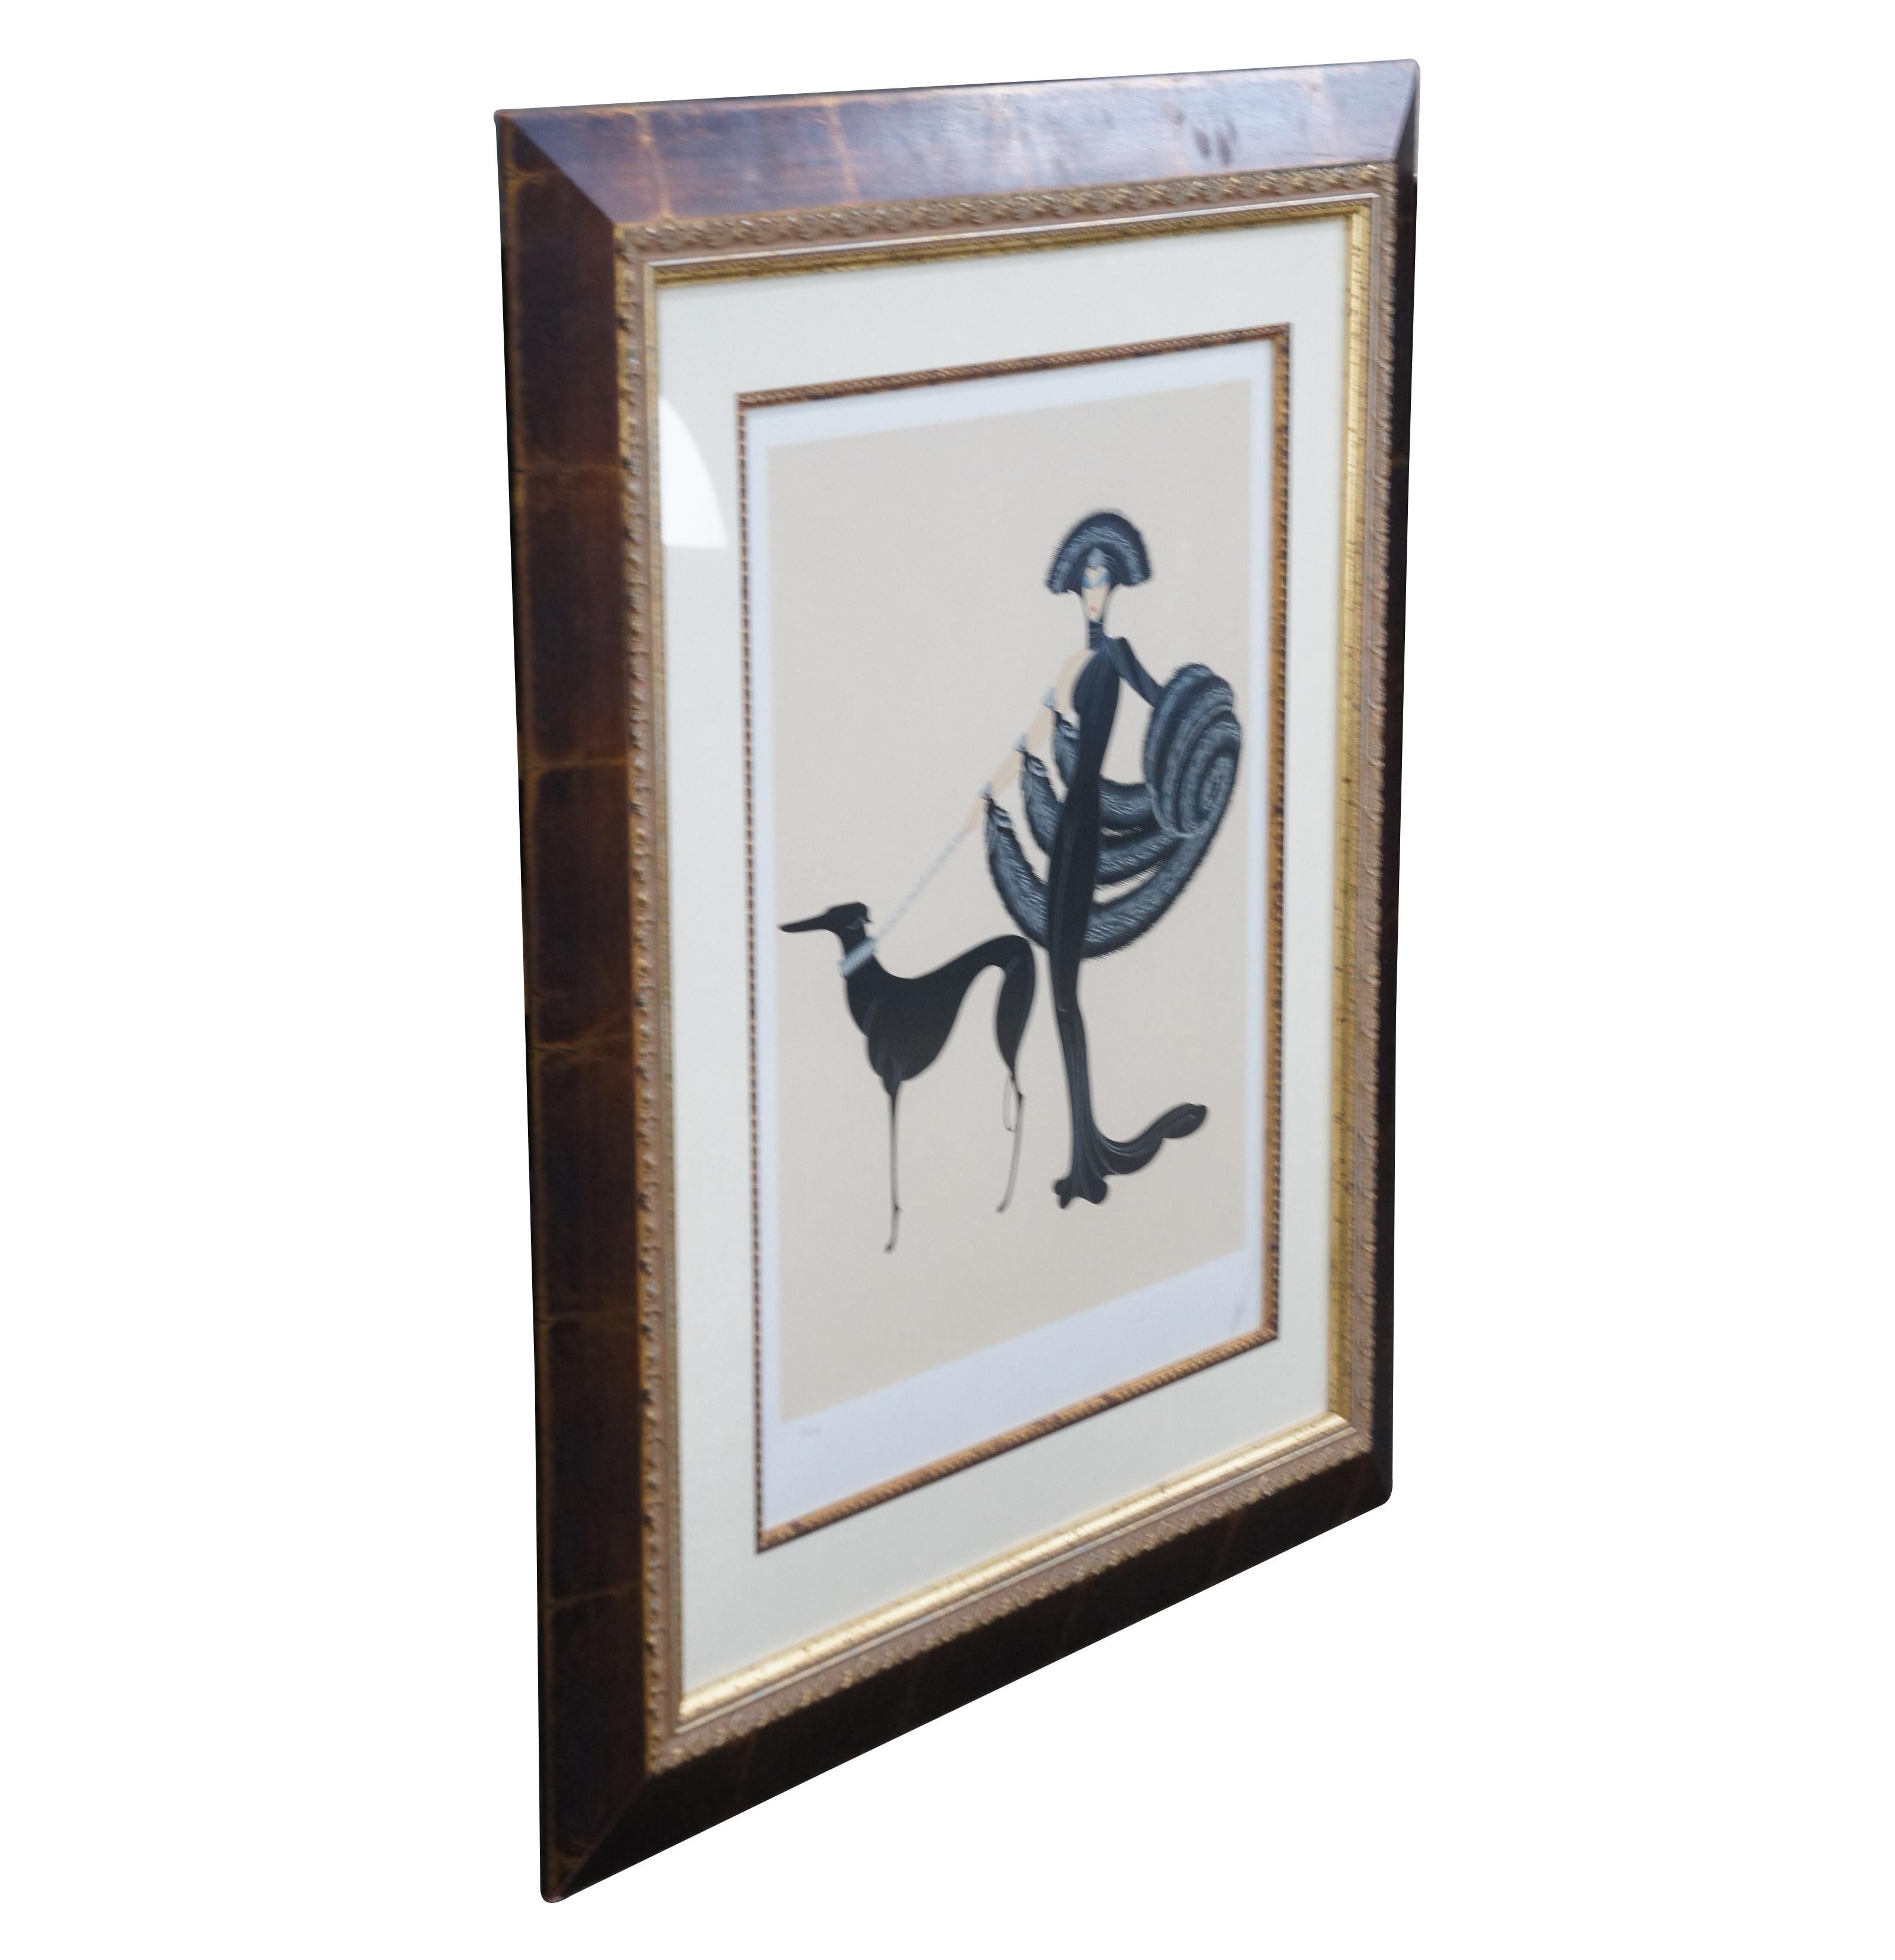 Vintage Erte (Romain de Tirtoff) Serigraphie, eine der berühmtesten Entwürfe von Erte, die eine schlanke Figur darstellt, die mit ihrem Whippet / Windhund spazieren geht.  Ca. 1983.  Signiert unten rechts, Nr. 31 von 300.

Romain de Tirtoff (Erte,